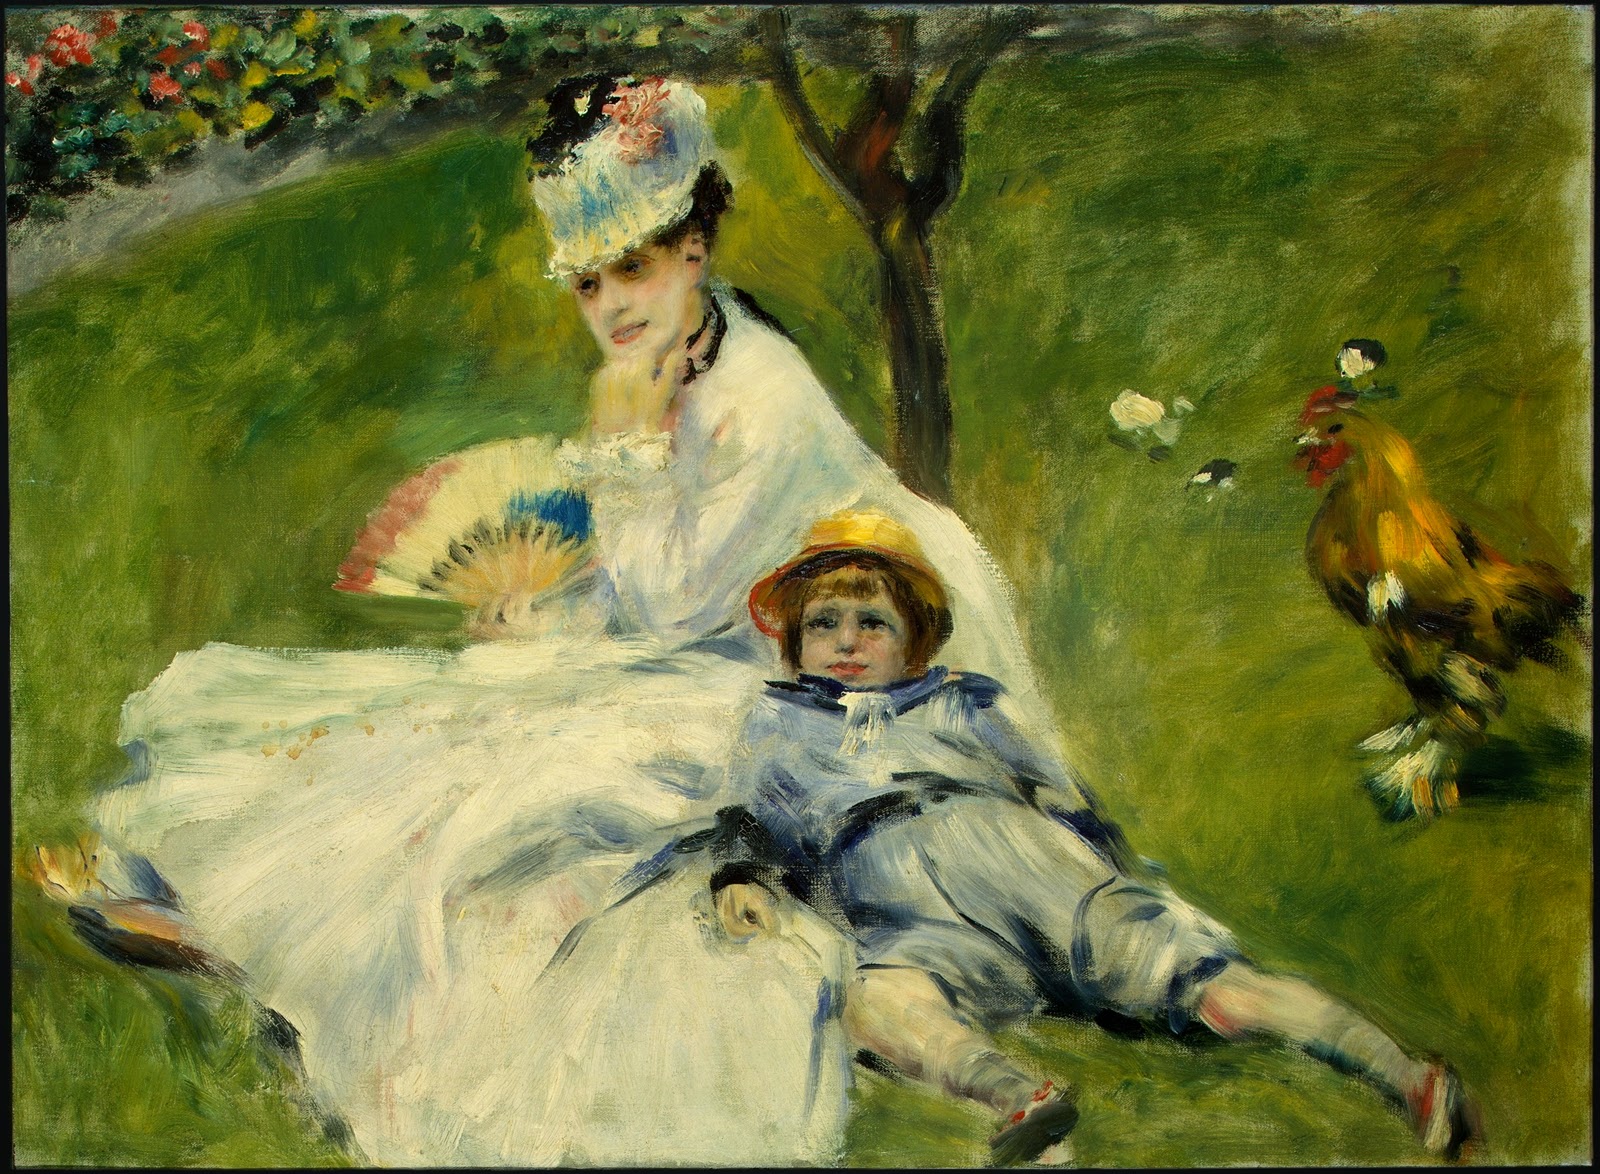 Pierre+Auguste+Renoir-1841-1-19 (284).jpg